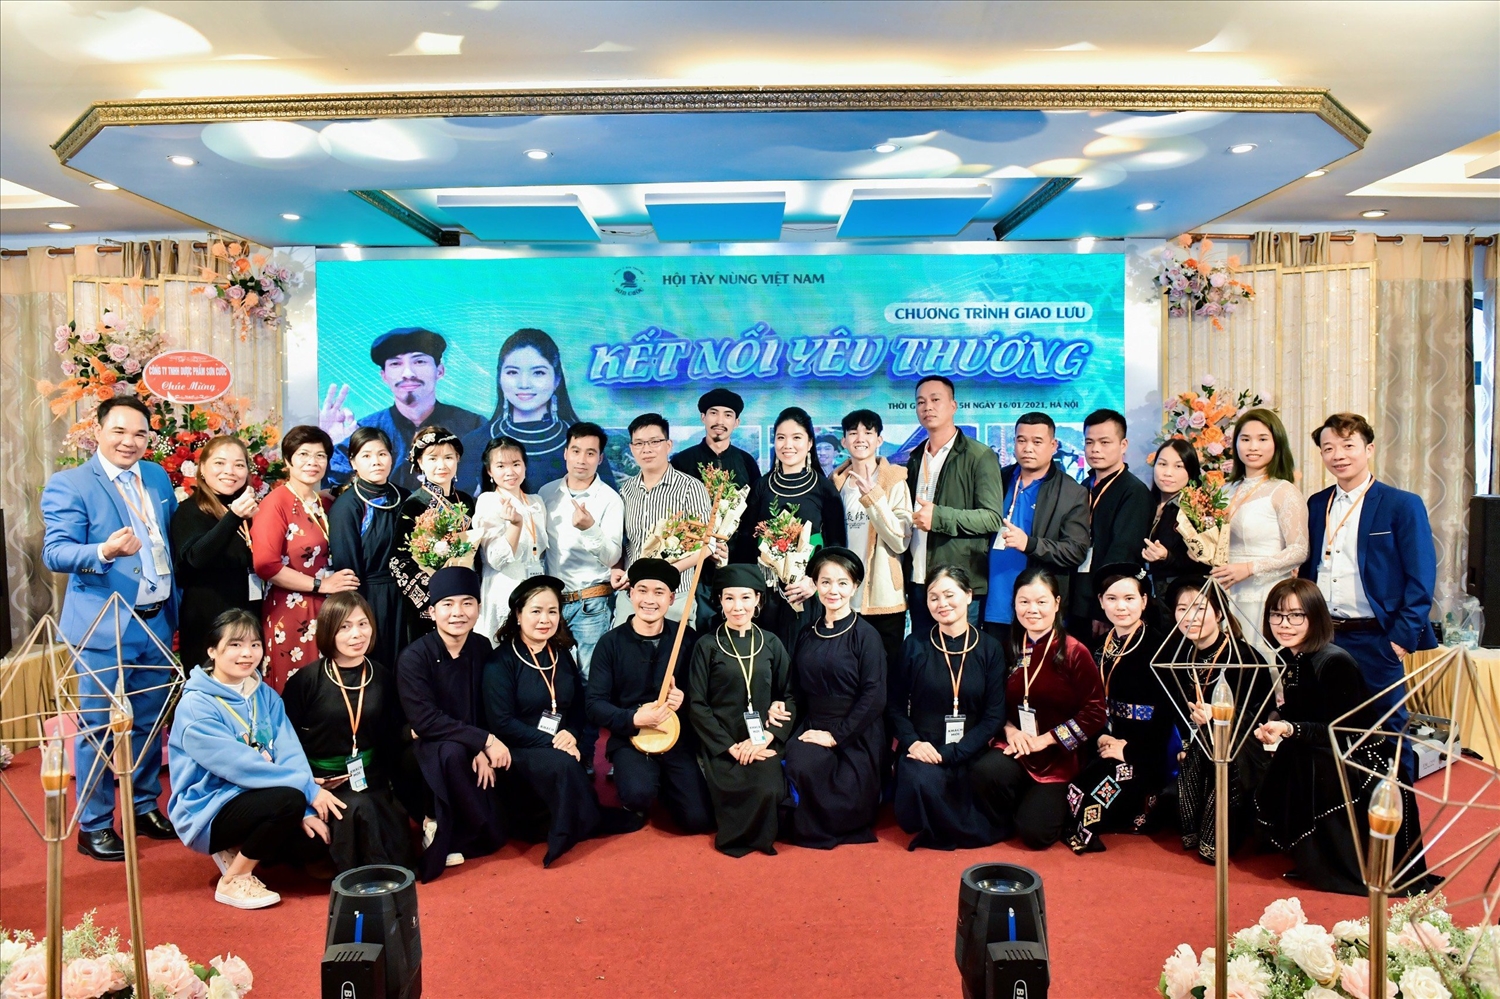 Doanh nhân Đoan Nguyễn cùng Ban Tổ chức Hội Tày – Nùng Việt Nam đã tổ chức thành công chương trình giao lưu “Kết nối yêu thương” năm 2021